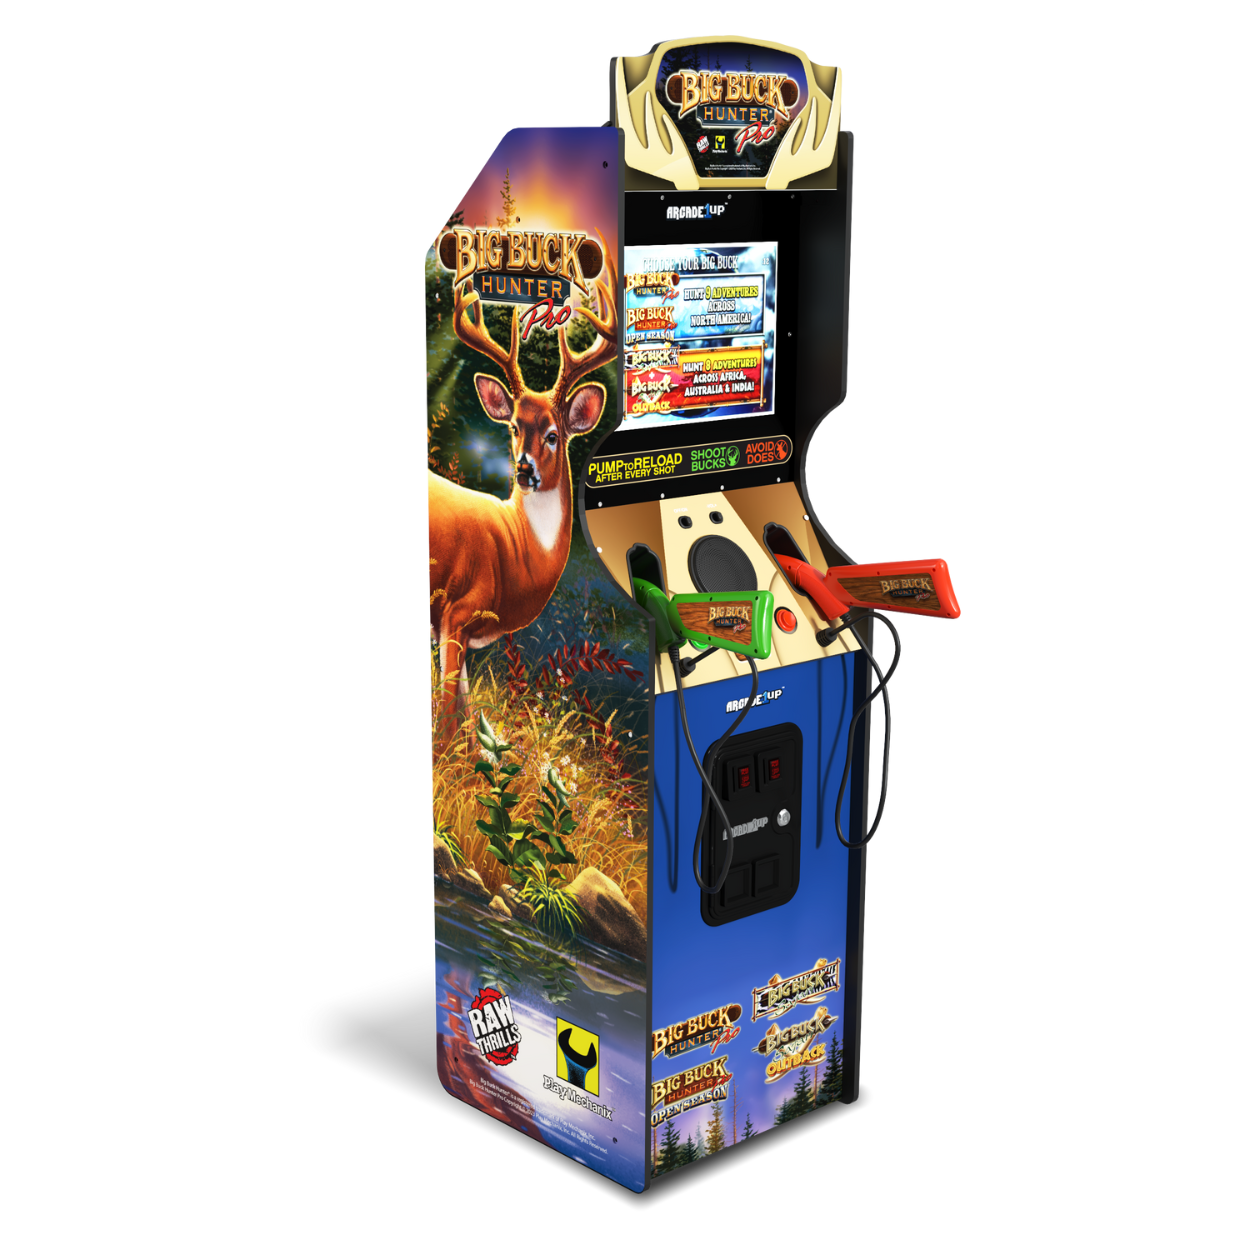 Arcade1up Big Buck Hunter Pro Deluxe Arcade Machine 4-in-1 Games